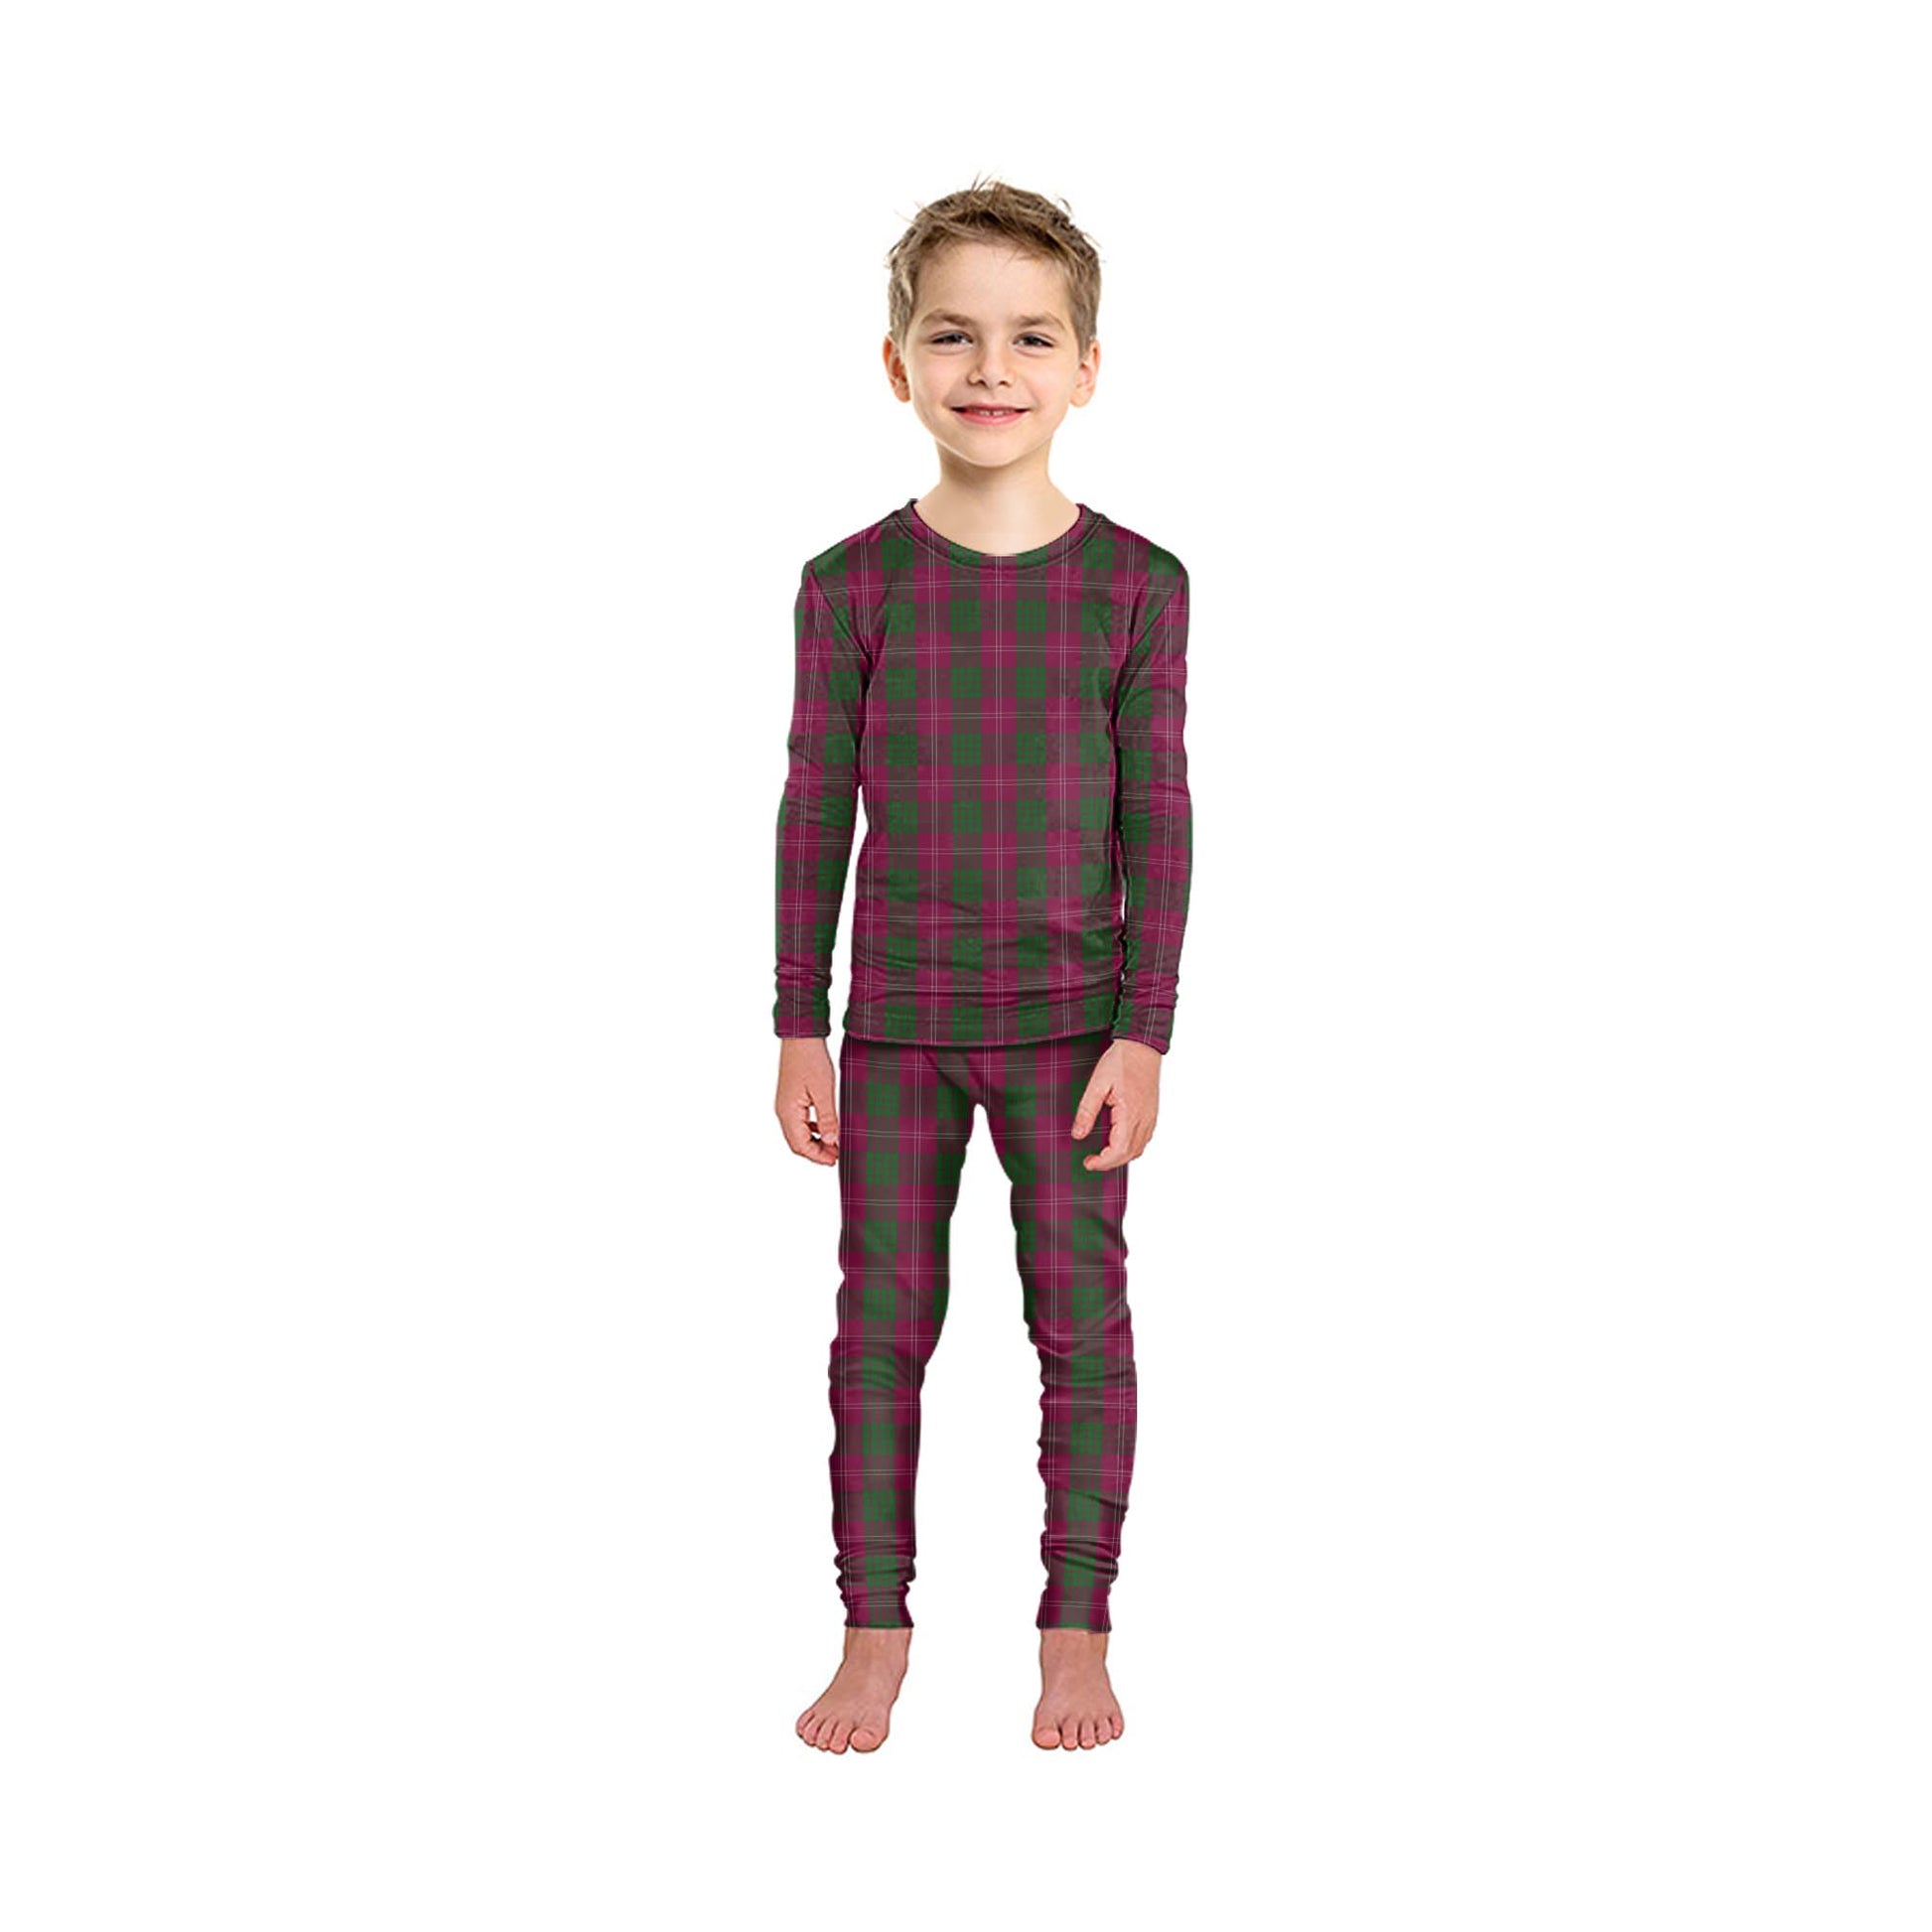 Crawford Tartan Pajamas Family Set - Tartanvibesclothing